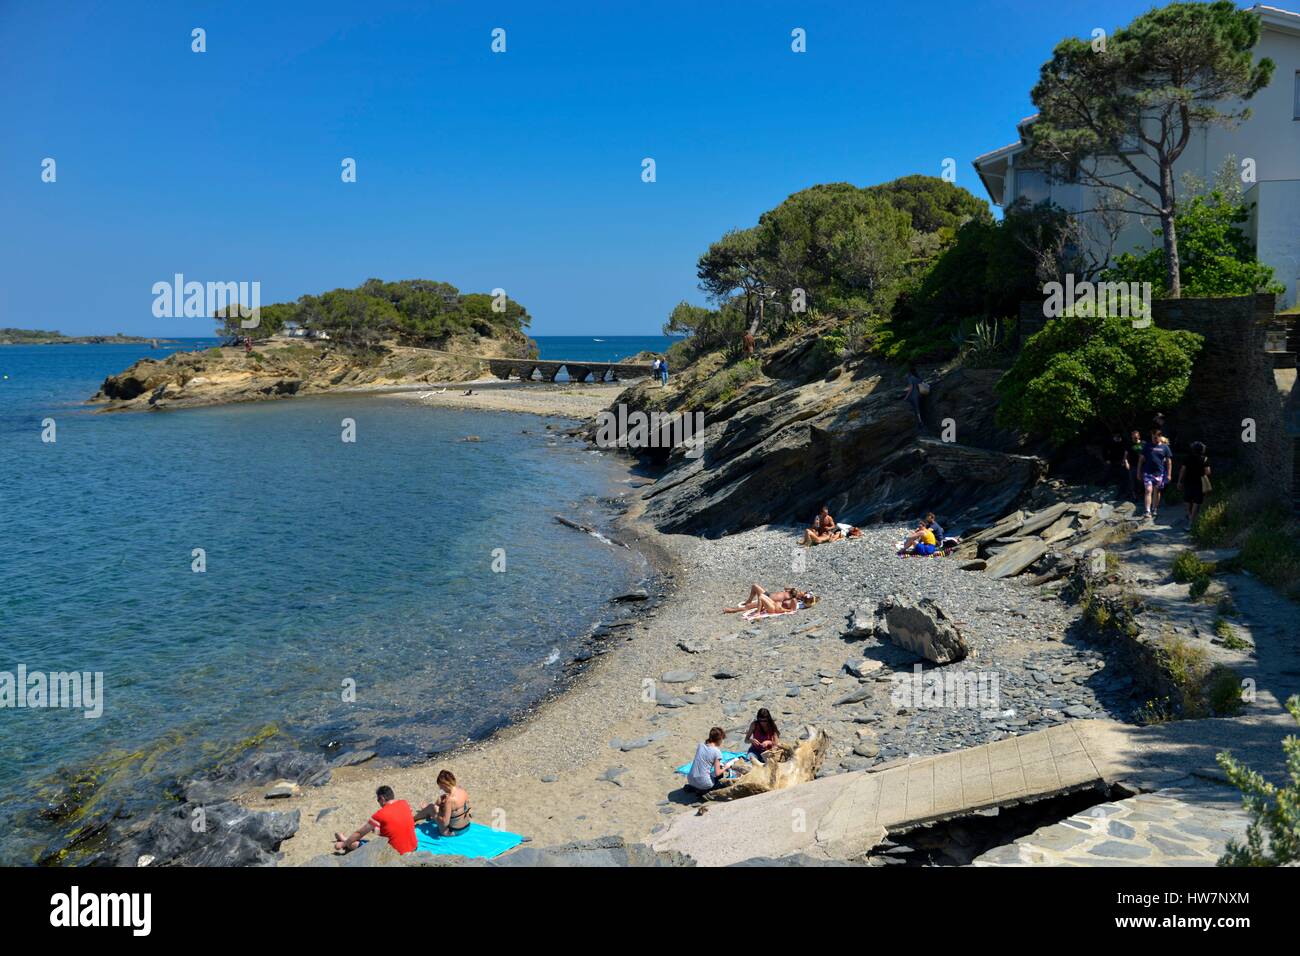 In Spagna In Catalogna Costa Brava Provincia Di Girona Cadaques Spiaggia Di Sa Conca Vacanzieri A Prendere Il Sole Con Isola Di Sortell Sulla Sinistra Foto Stock Alamy